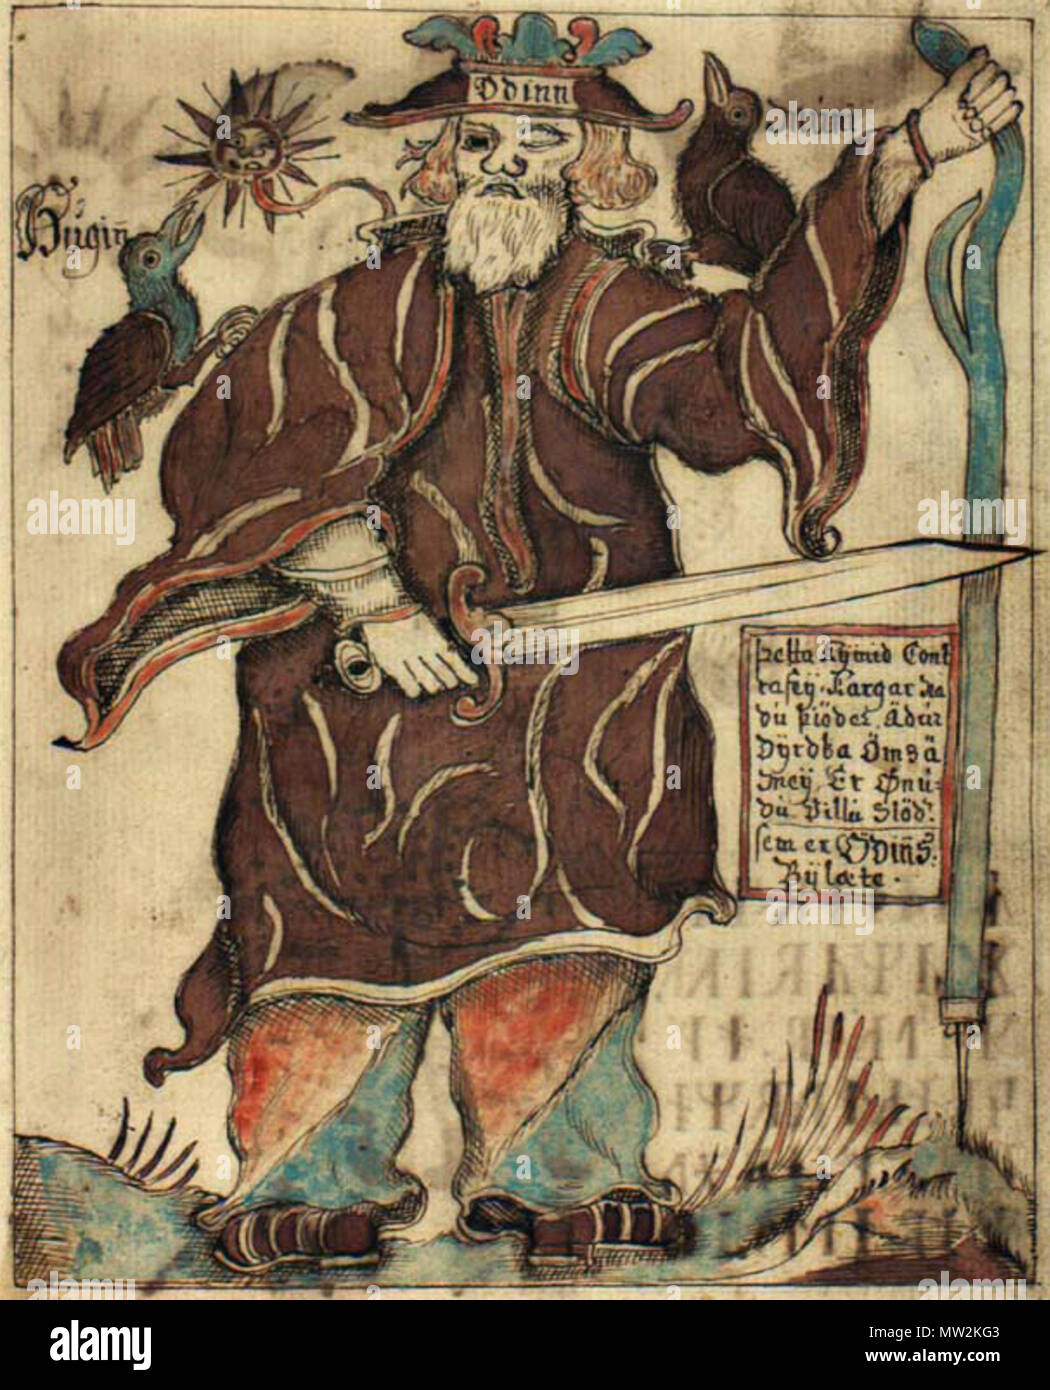 . Eine Abbildung der Gott Odin mit seinen beiden Raben Huginn und Muninn, aus einer isländischen Handschrift aus dem 18. Jahrhundert. 1760 [1]. Ólafur Brynjúlfsson [2] 446 NKS 1867 4, 94 r, Odin Stockfoto